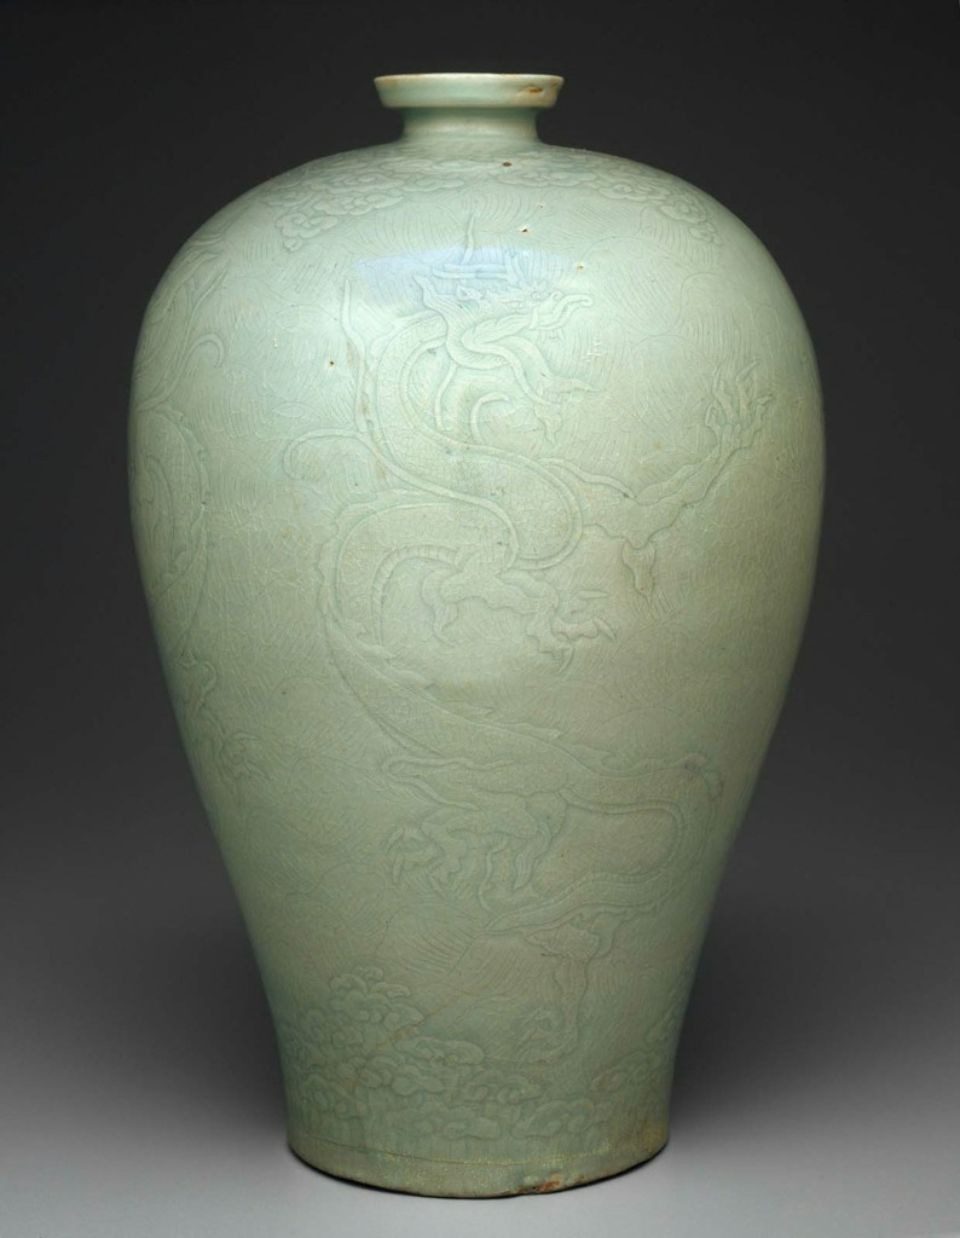 17 Awesome Korean Celadon Vase 2024 free download korean celadon vase of prunus vase with carved dragon ic2b2c2adic29ec290ic296c291ec281ic29aec2acc2b8ec2a7c2a4ec2b3c291 ec29dc291cc293c2b7ec299c2bdac288ec2be